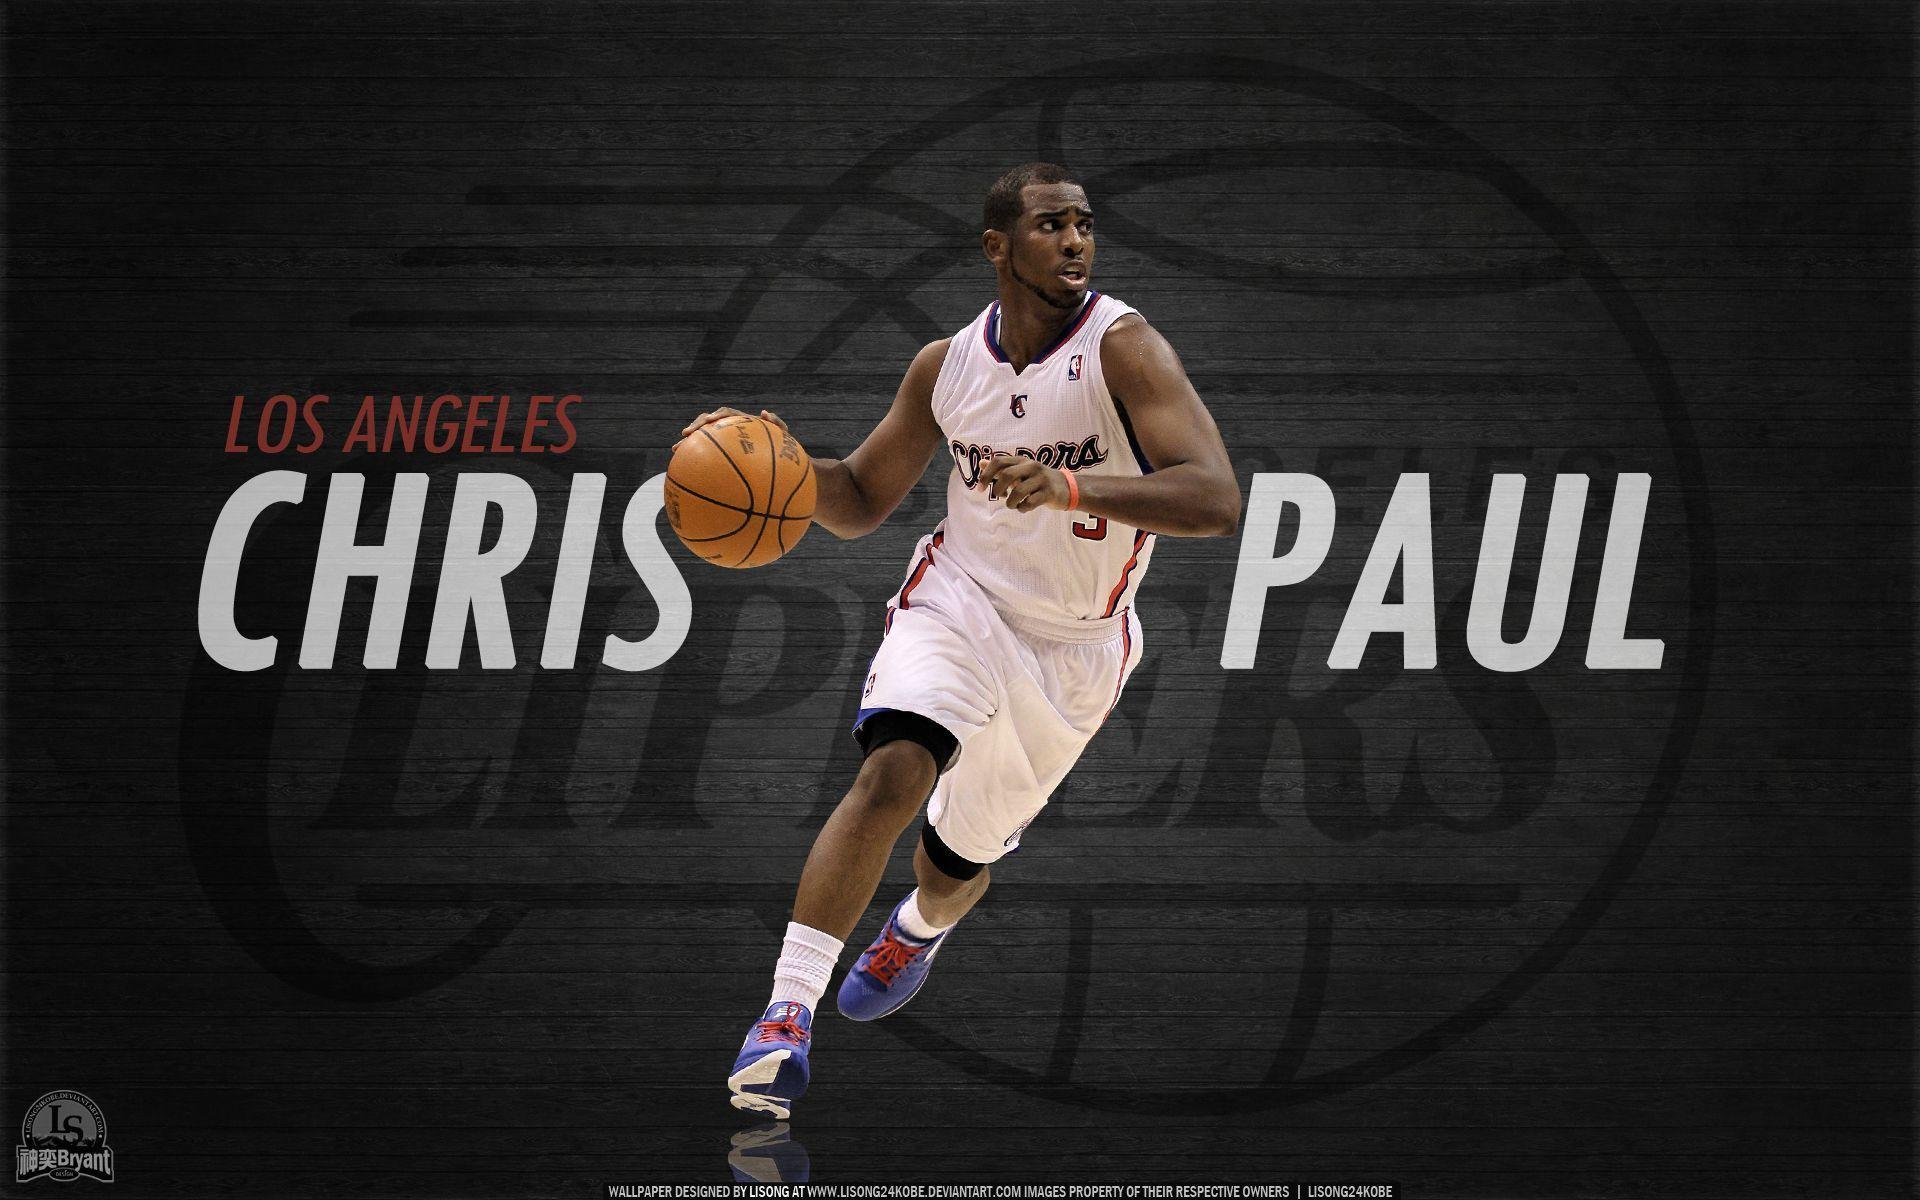 Chris Paul NBA 2021 Wallpapers - Wallpaper Cave